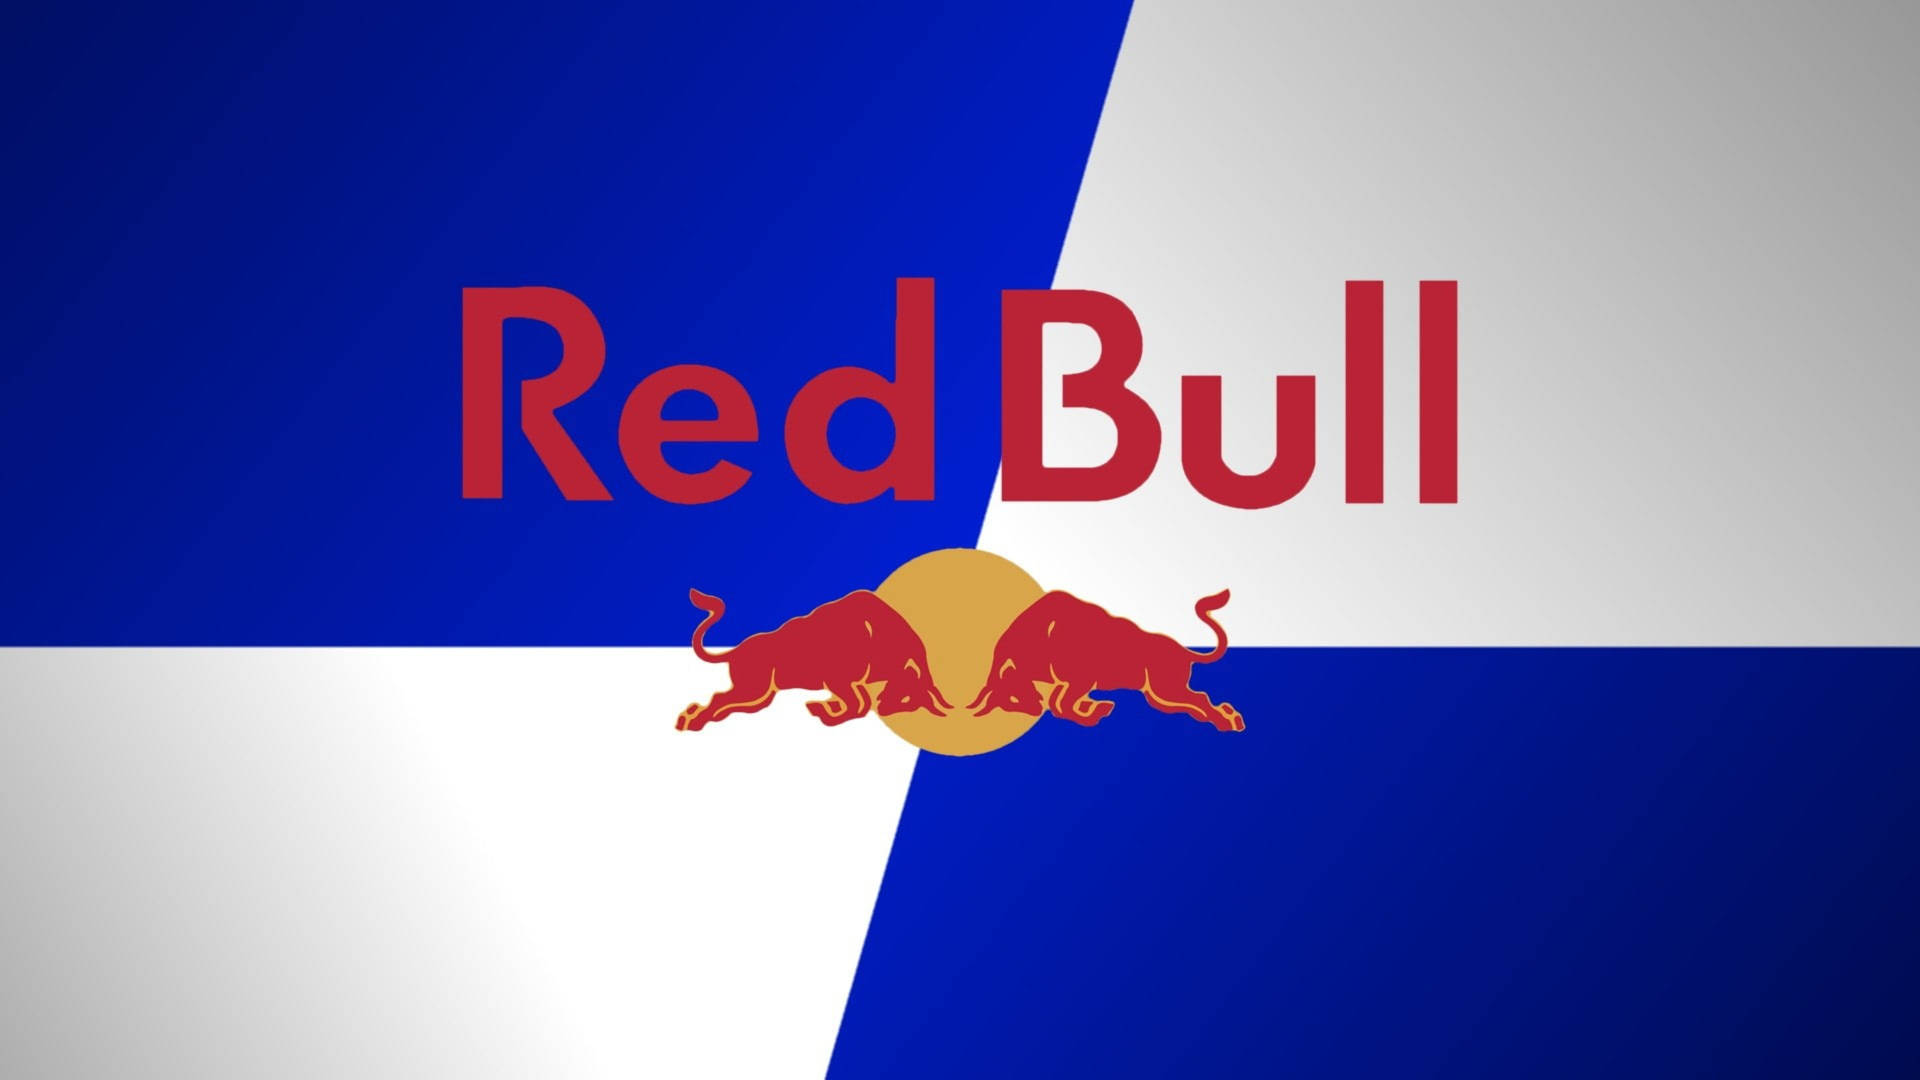 Red Bull Brand Logo Wallpaper